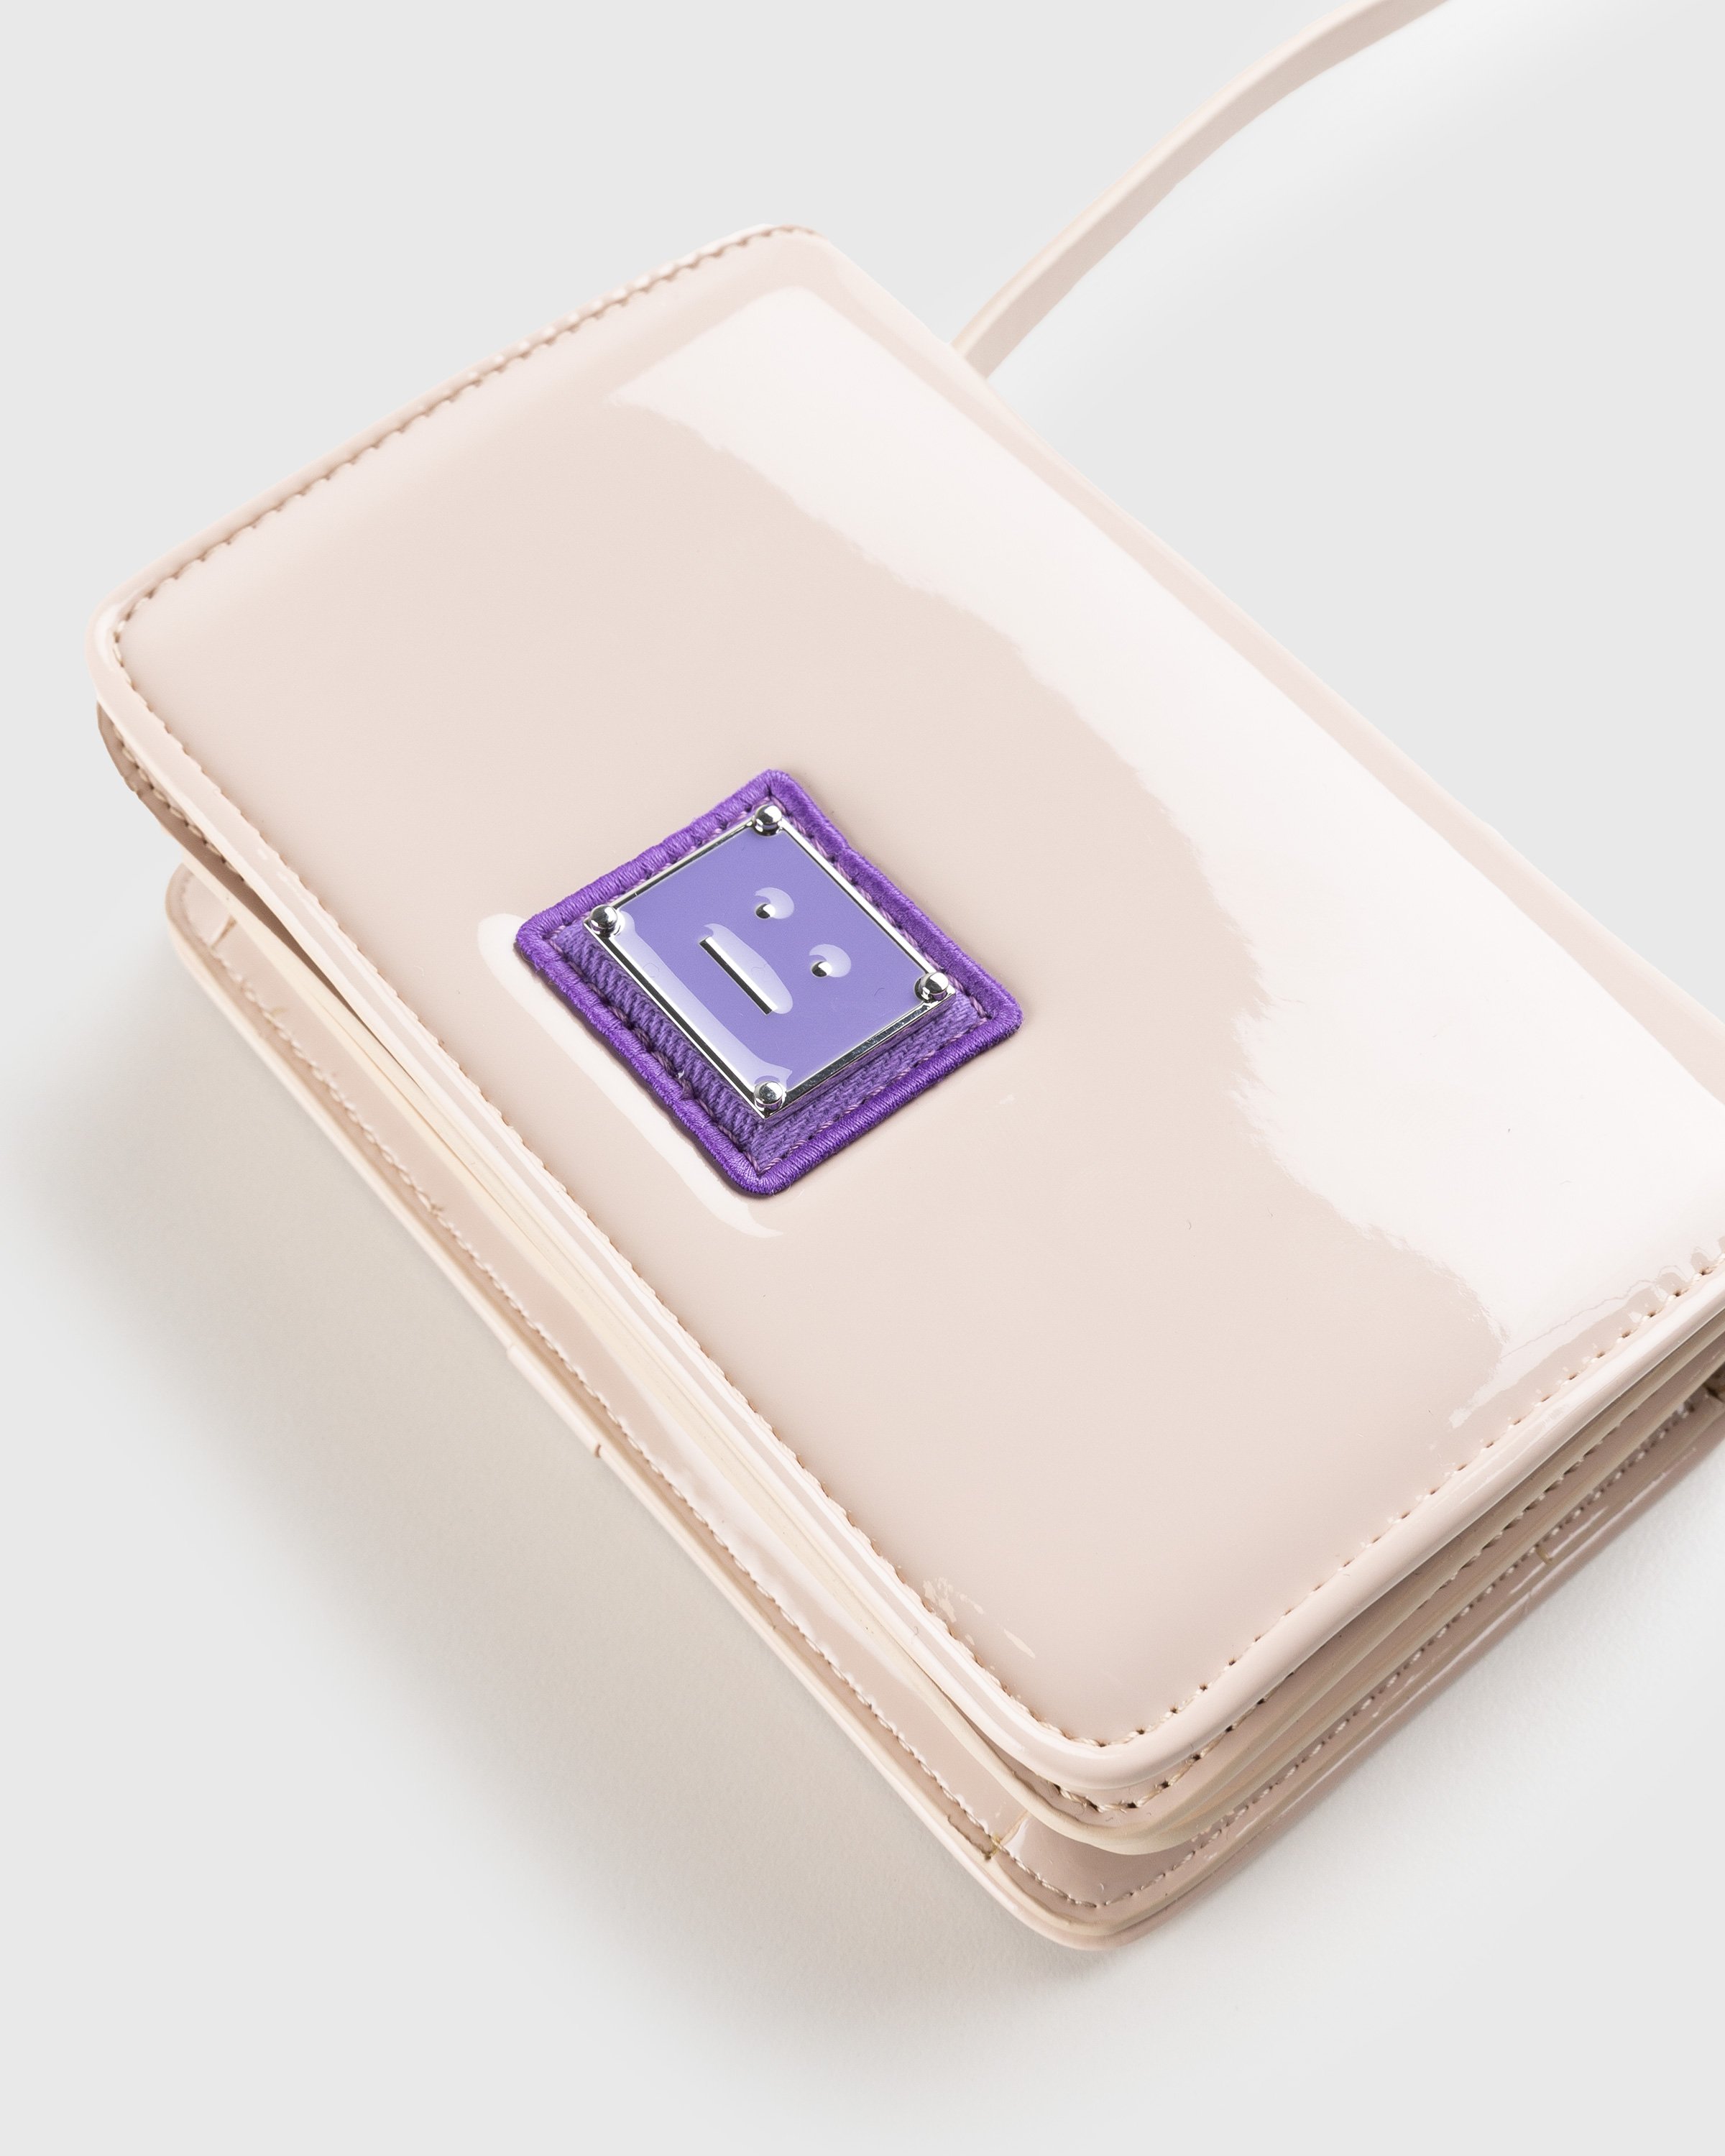 Acne Studios - Mini Crossbody Face Bag Light Beige/Purple - Accessories - Beige - Image 3